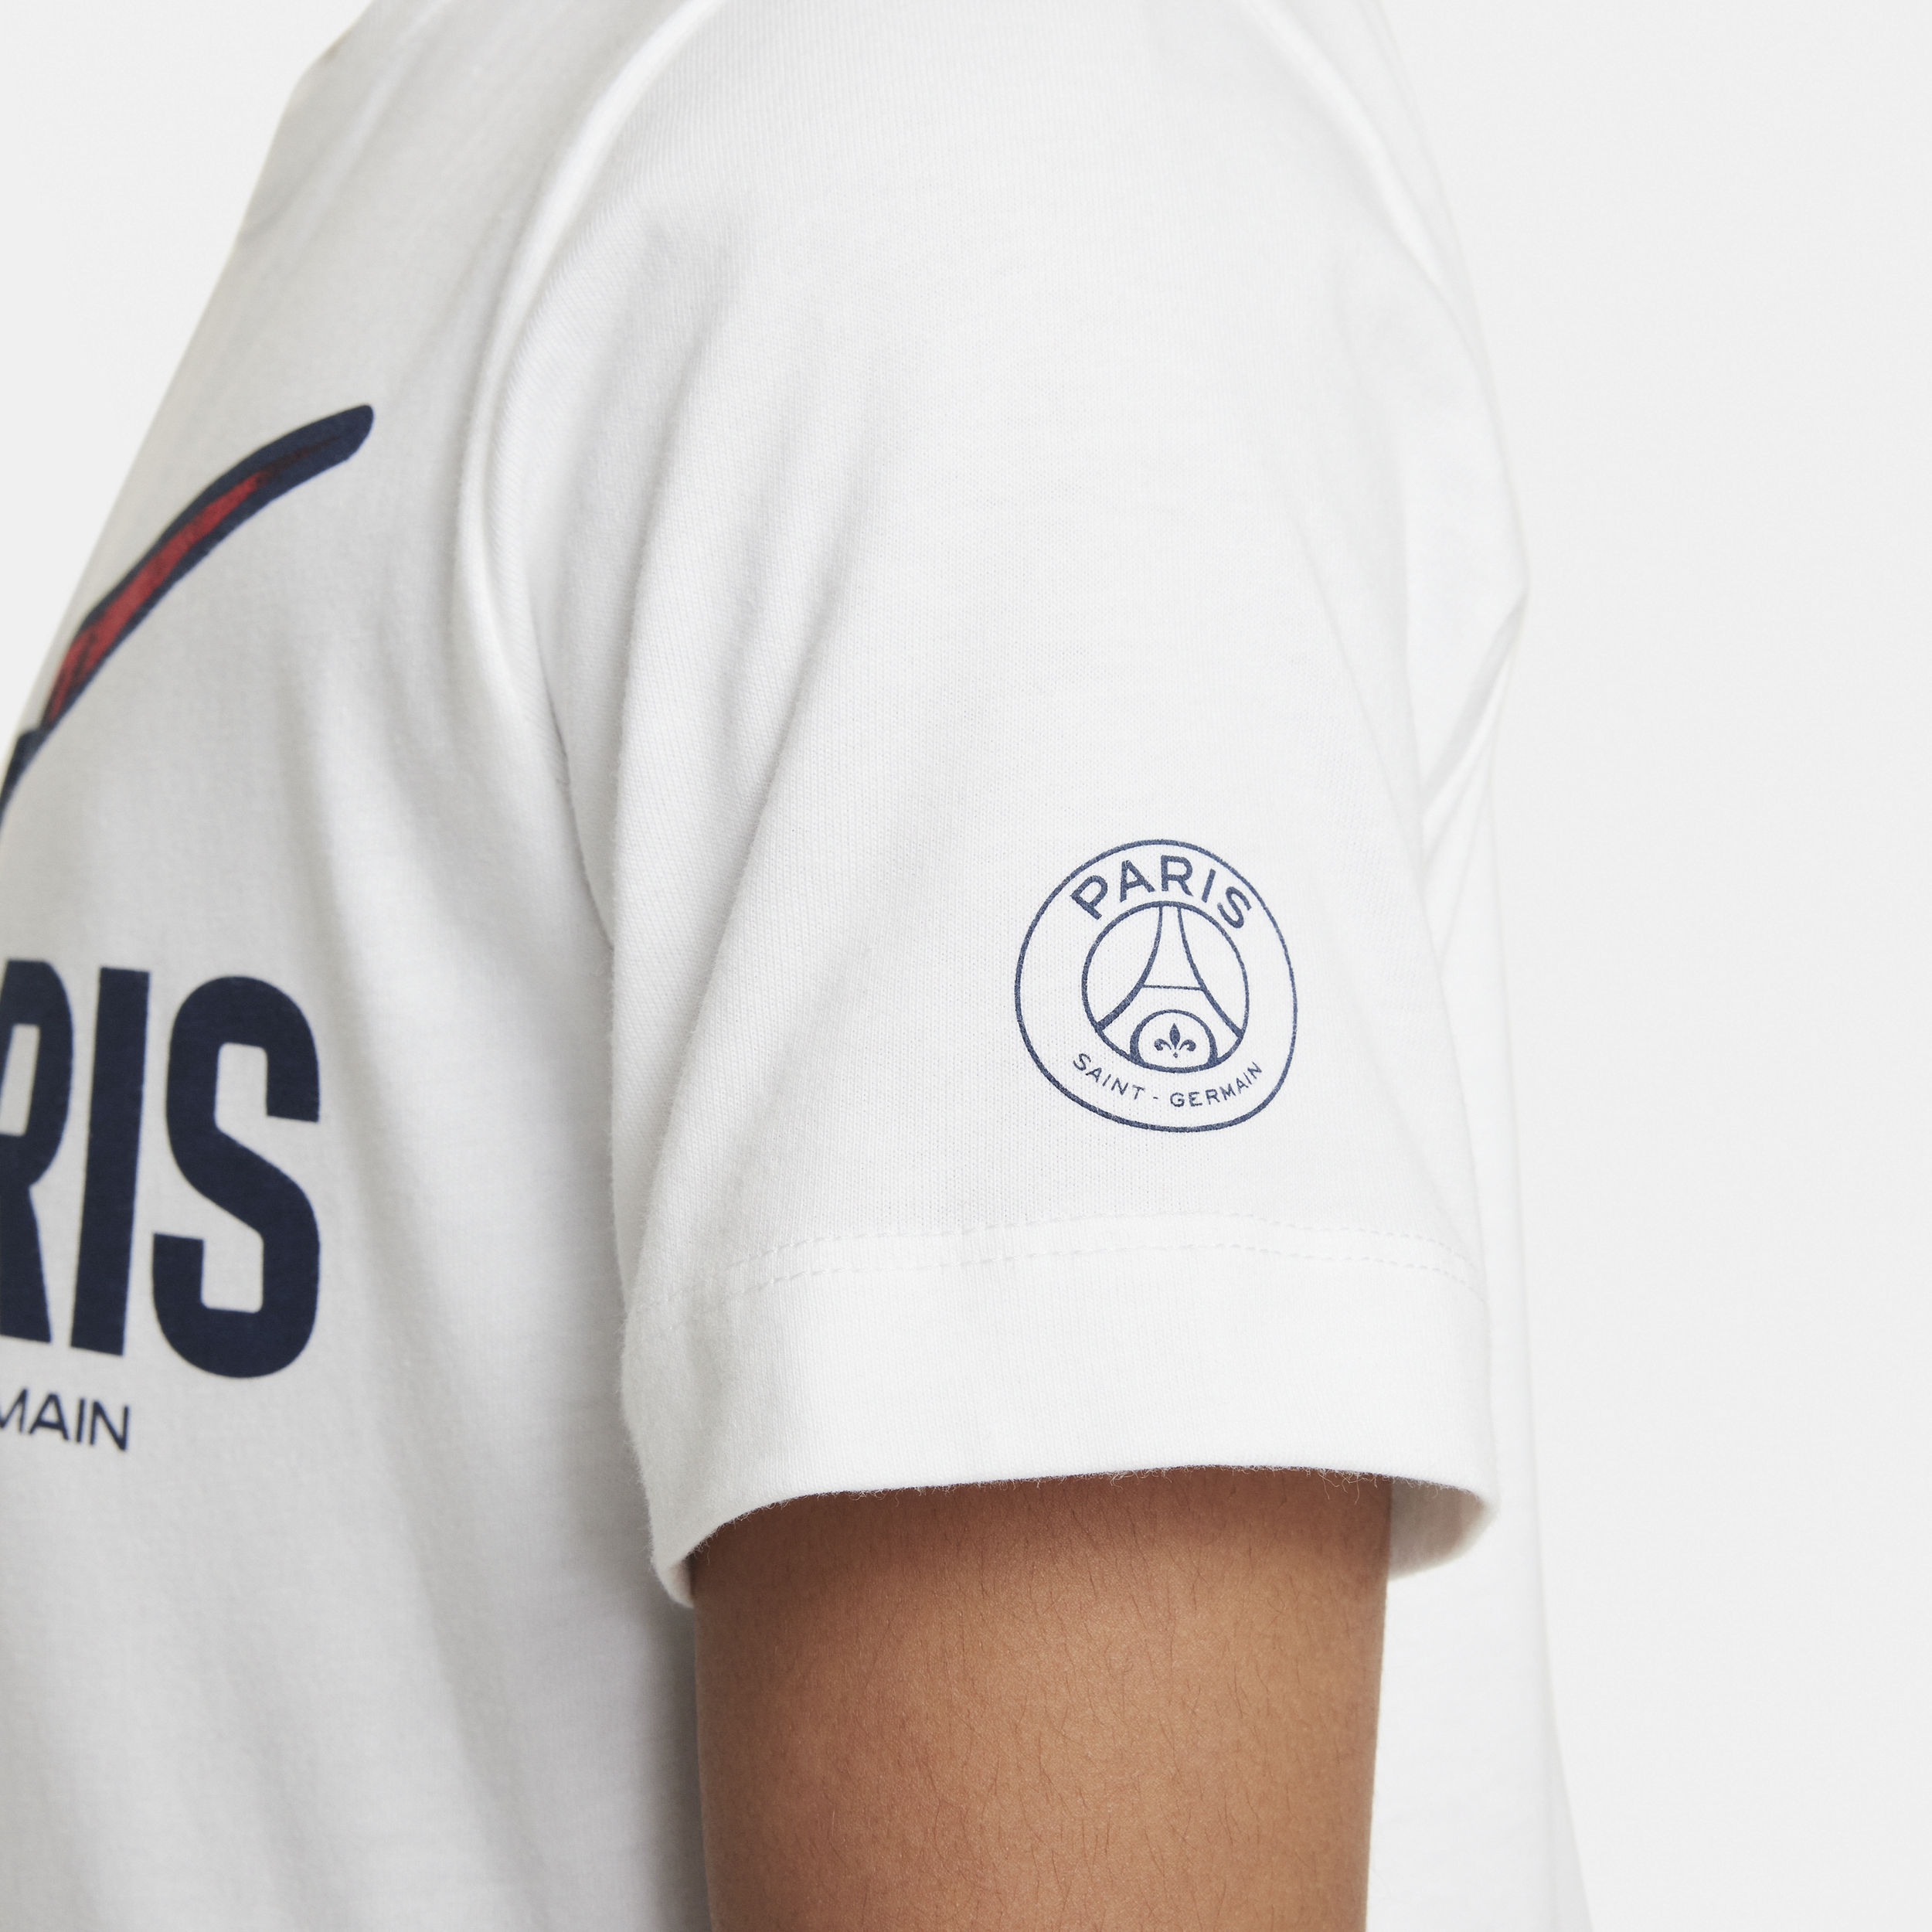 Nike Paris Saint-Germain Swoosh voetbalshirt voor kids Wit